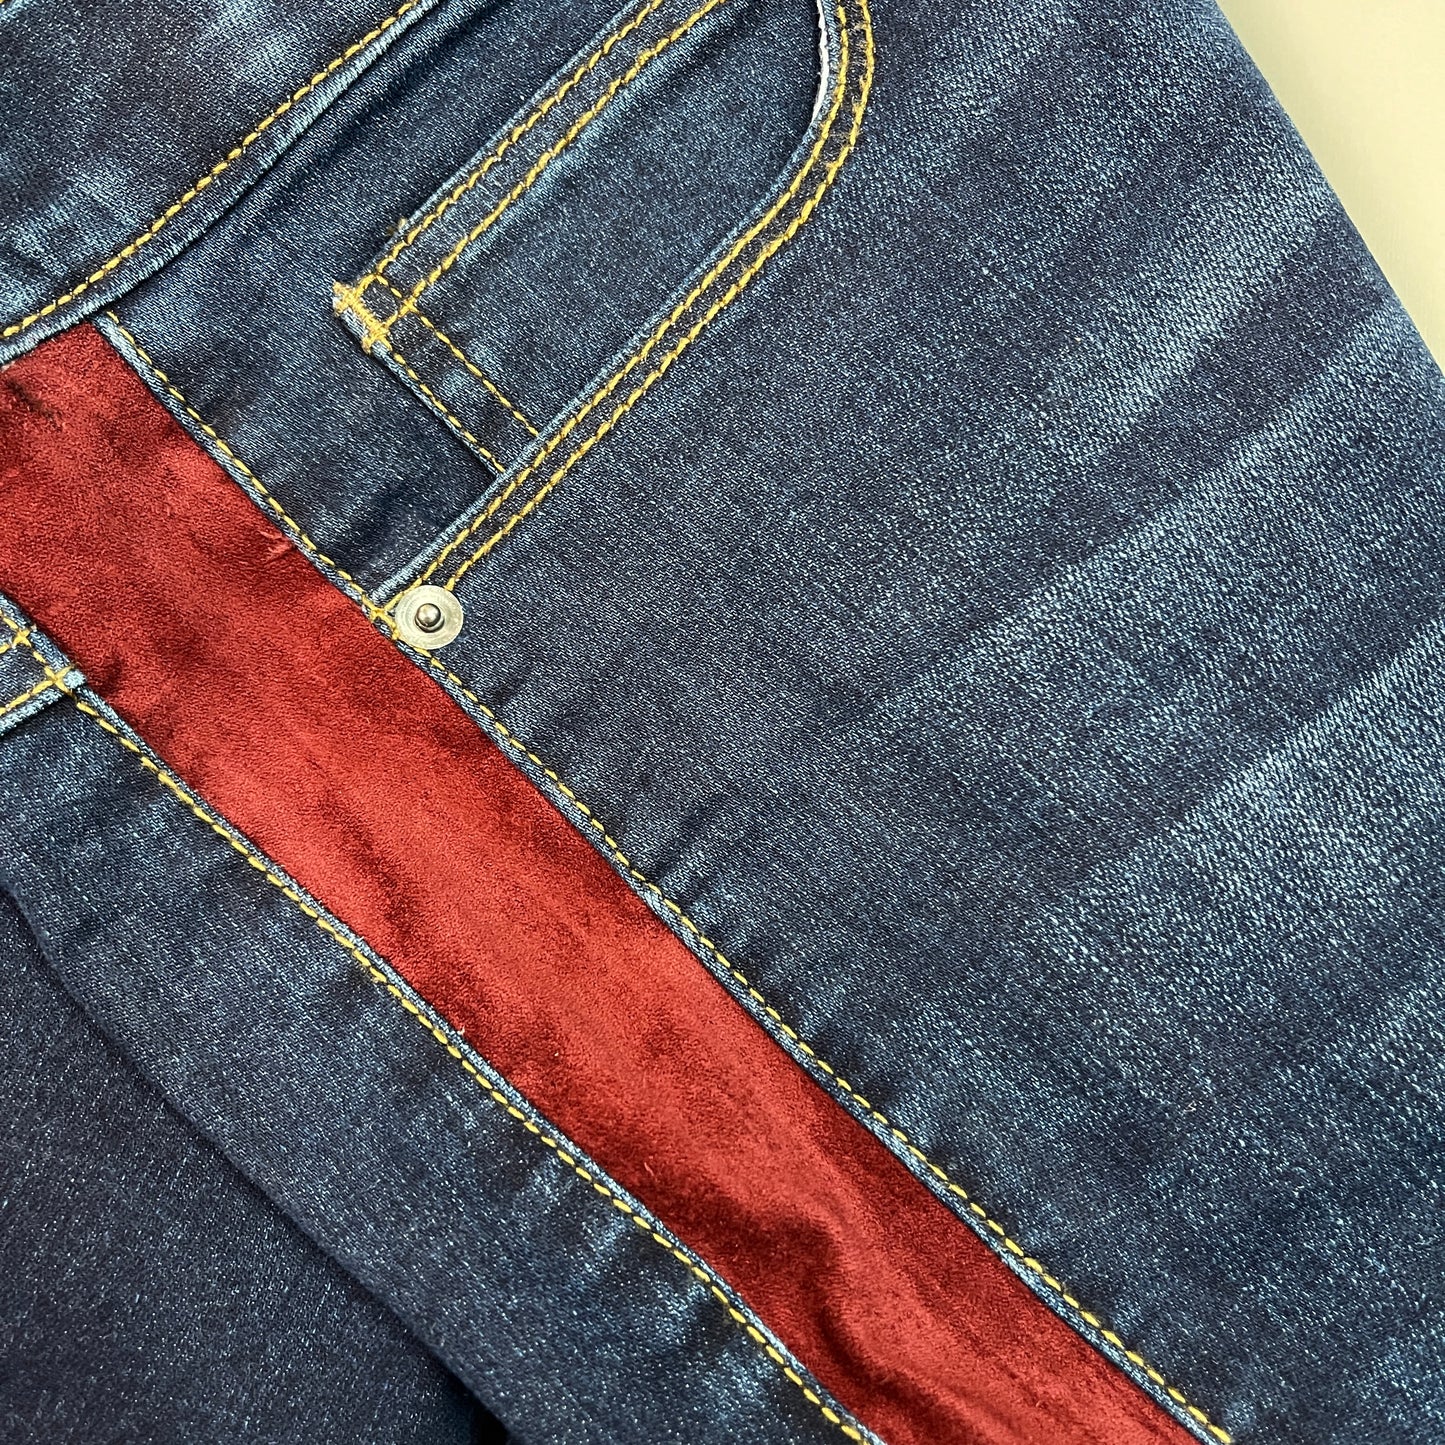 CLINTON KELLY Frayed Hem Jeans Women's Sz 16 Regular Dark Wash W/ Maroon Striped Side (New)